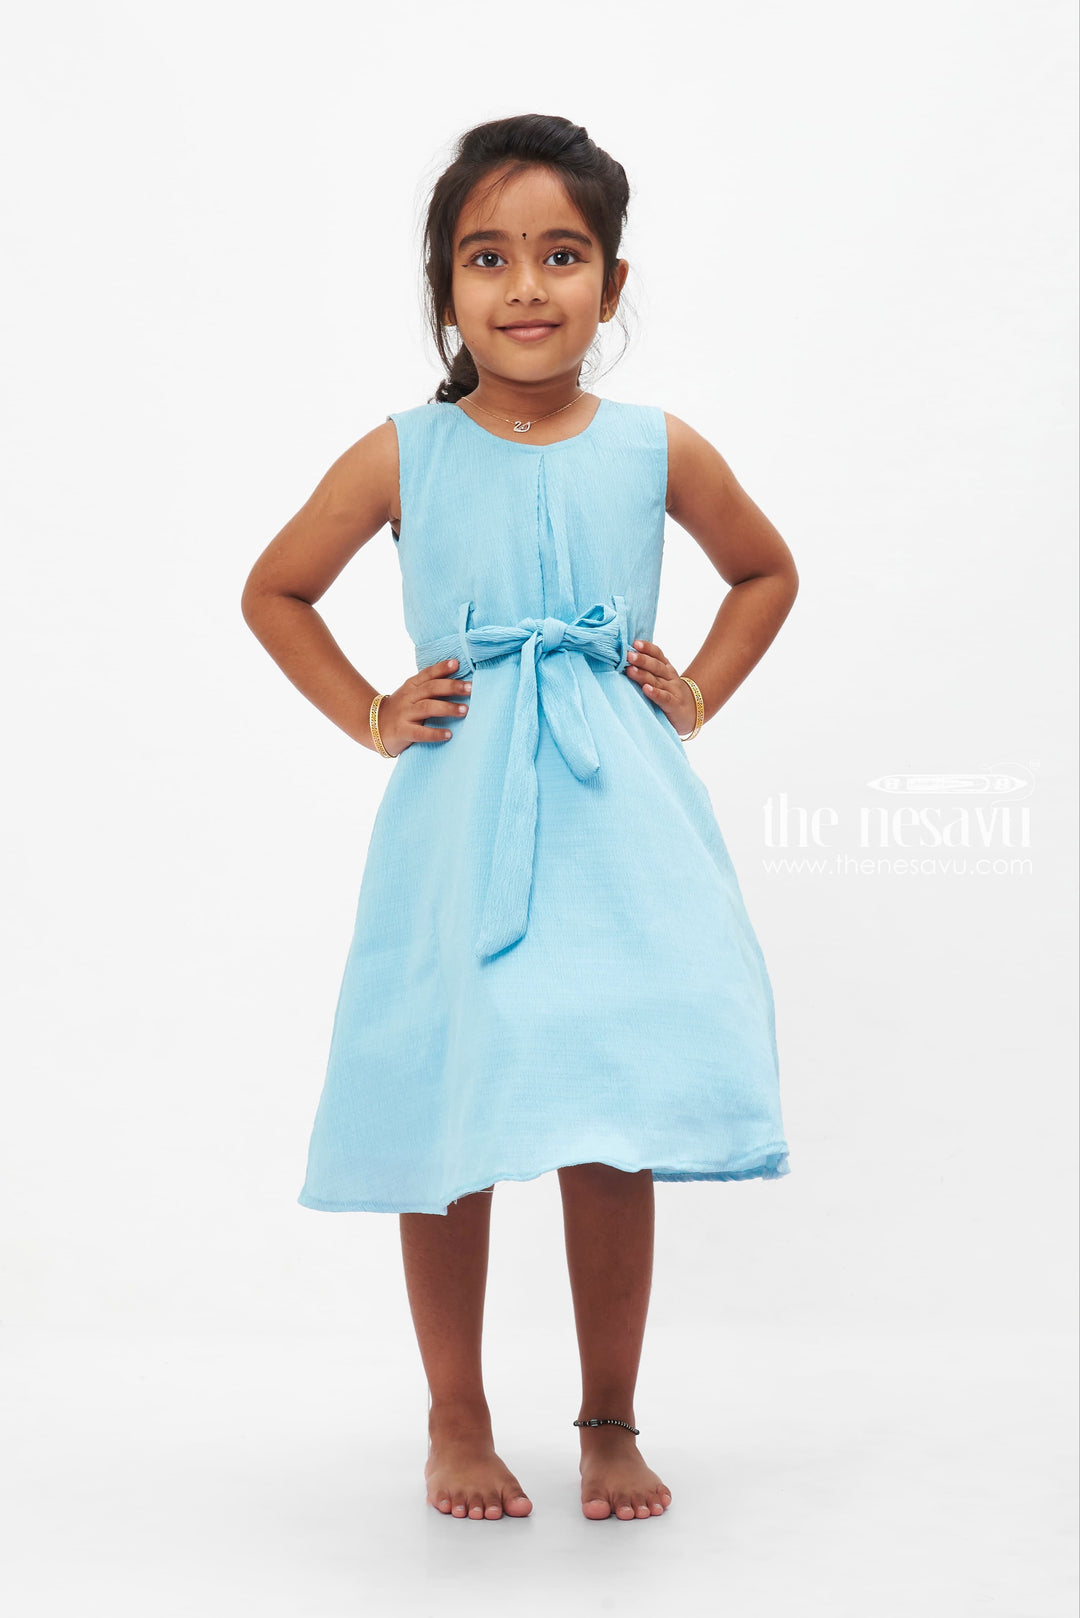 The Nesavu Girls Fancy Frock Serene Sky Blue Cotton Dress: Graceful Bow Accent for Girls Nesavu 18 (2Y) / Blue GFC1220C-18 Girls' Sky Blue Sleeveless Cotton Dress | Light Summer Style for Kids | The Nesavu